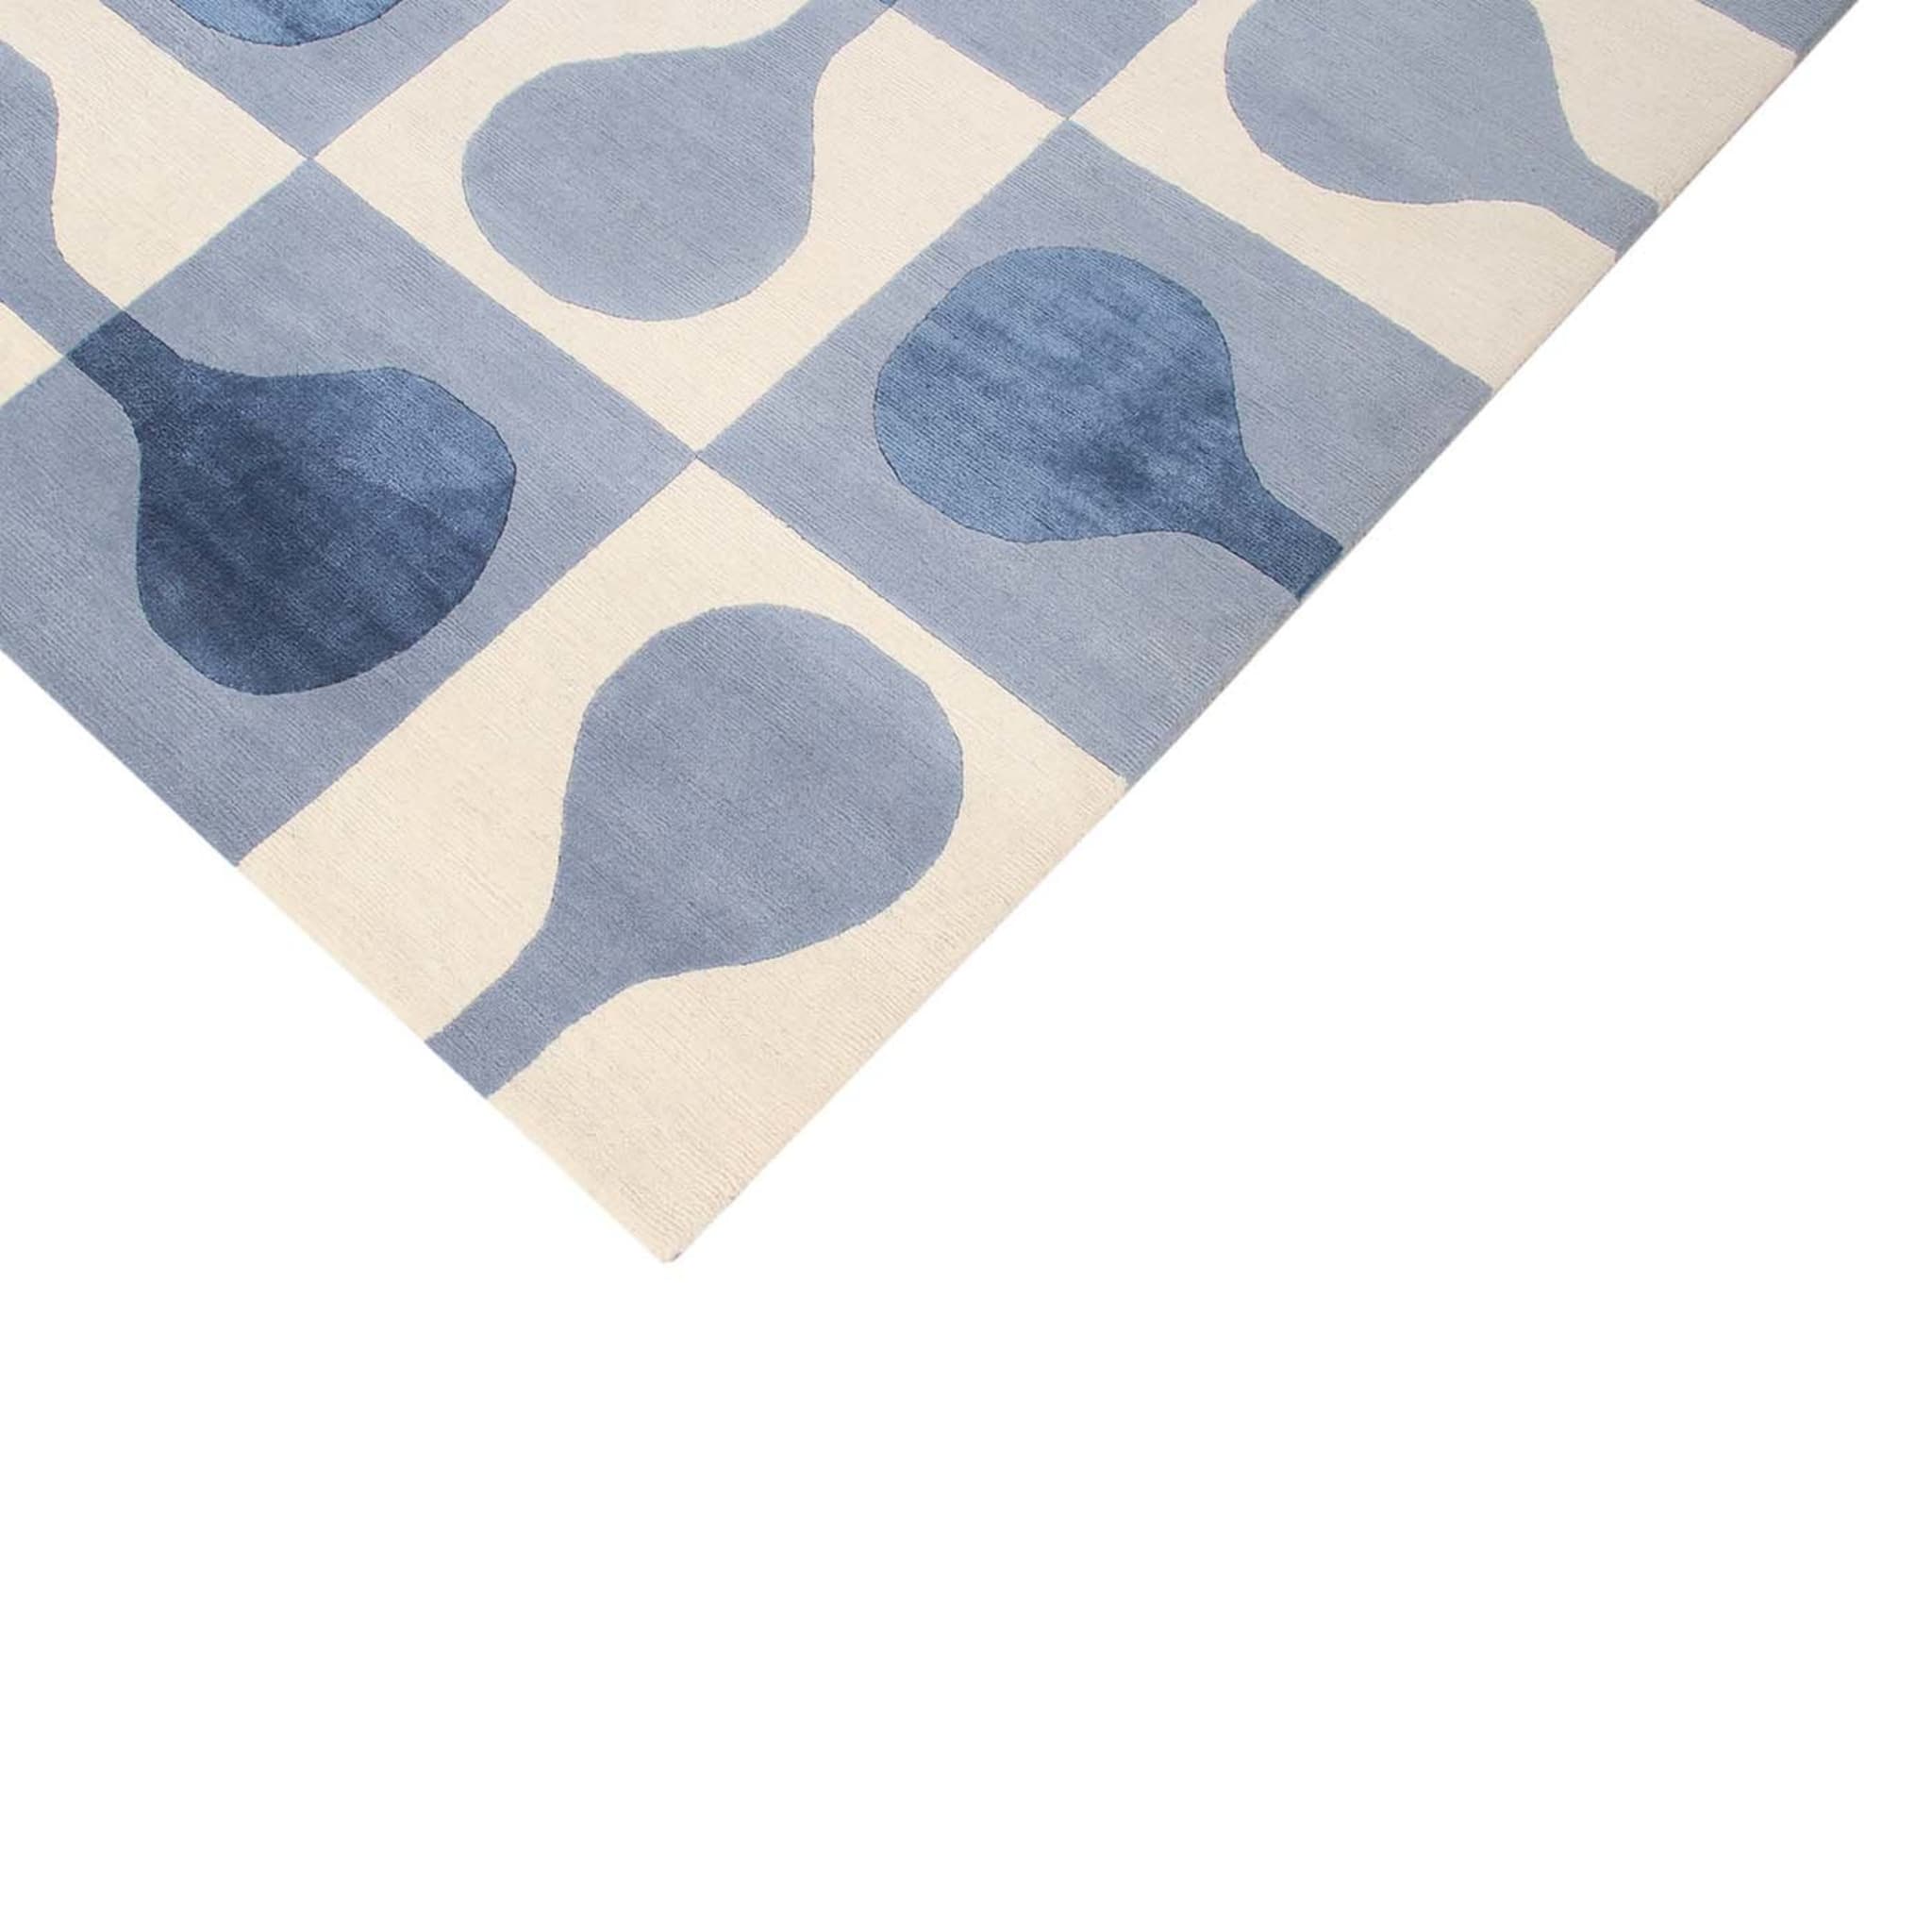 Sorrento Blue Carpet by Gio Ponti - Alternative view 1